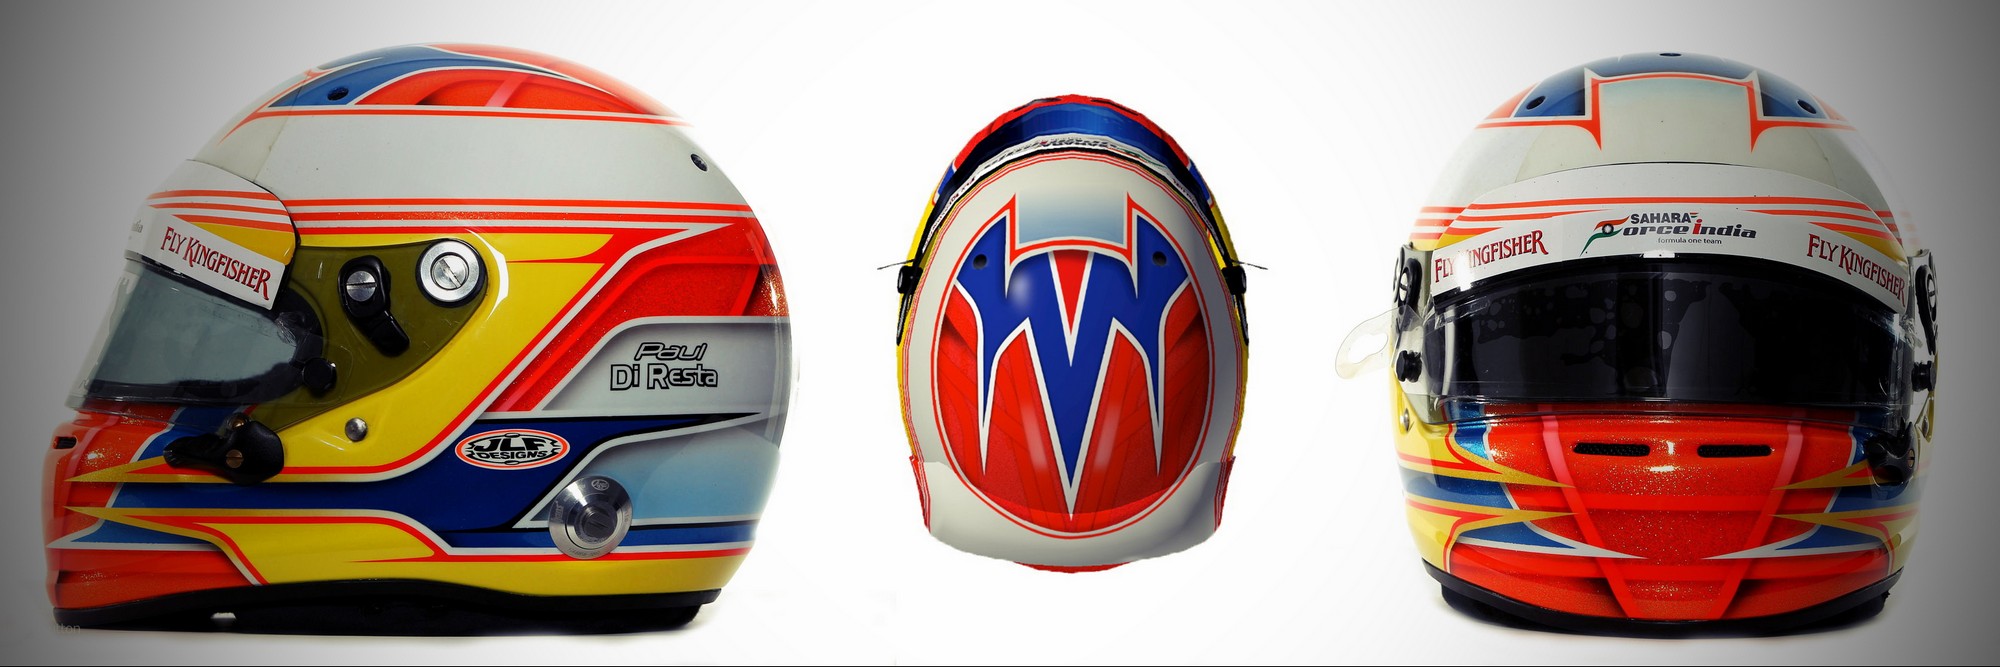 Шлем Пола ди Ресты на сезон 2012 года | 2012 helmet of Paul di Resta